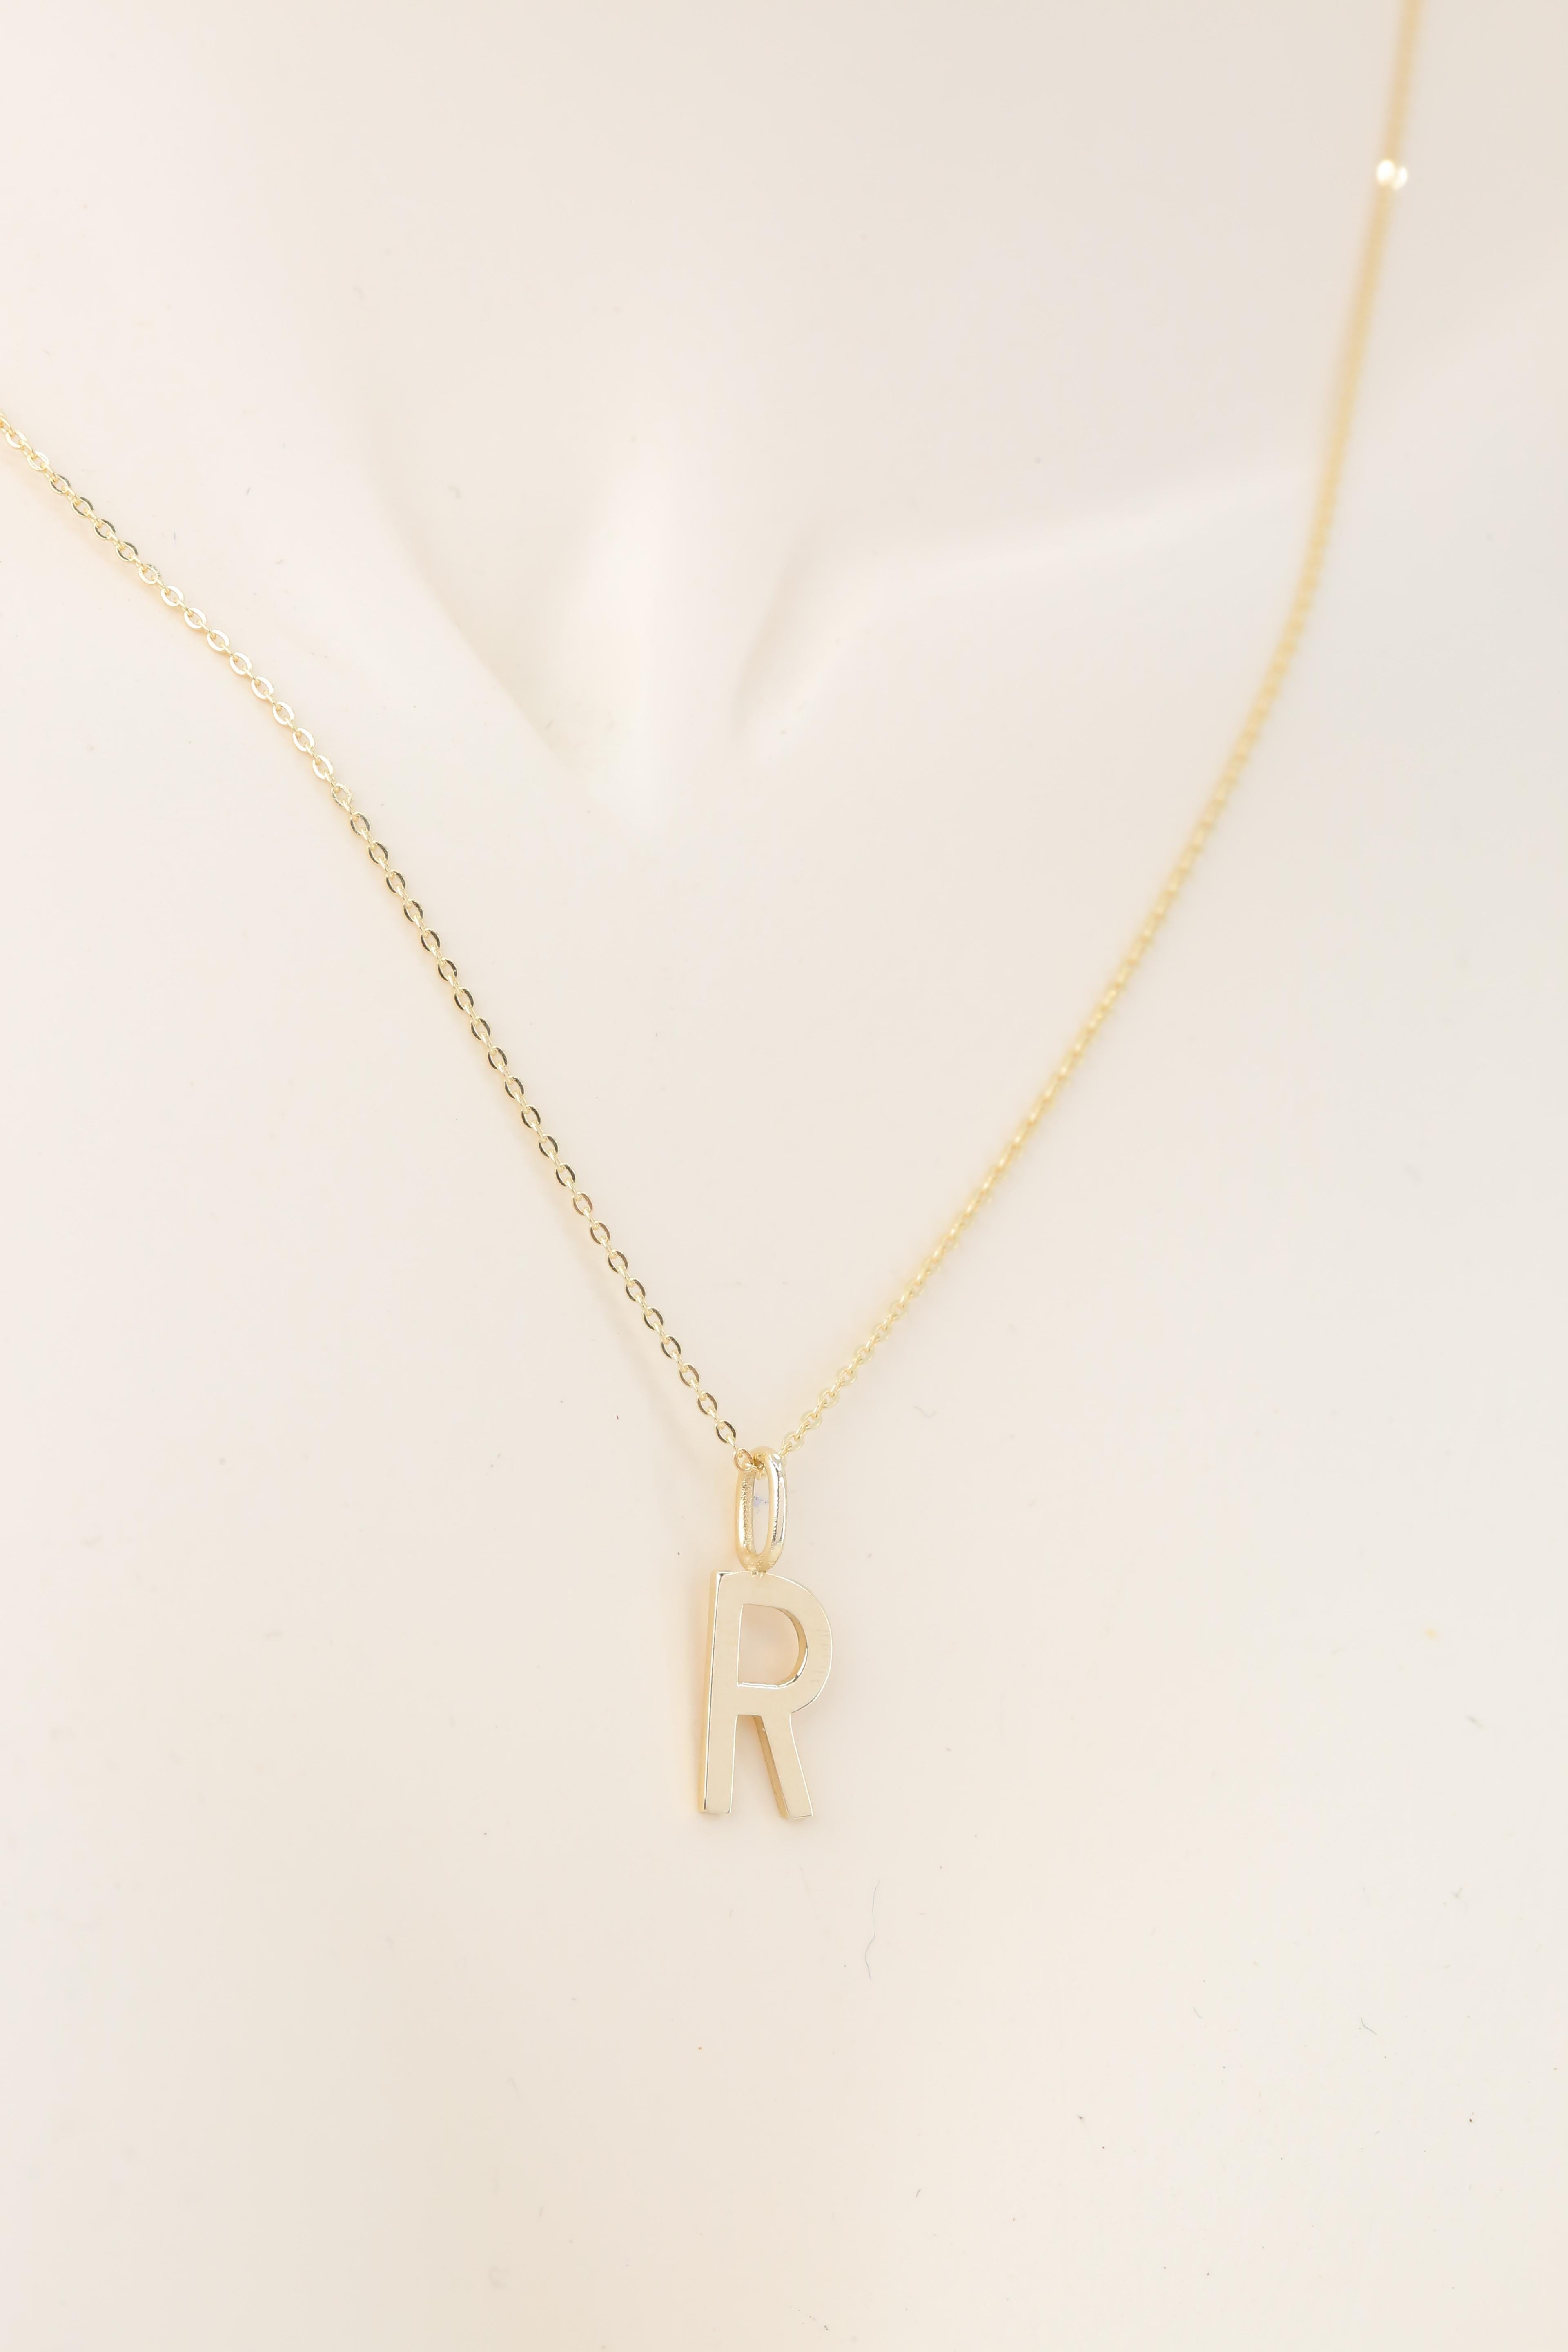 Women's or Men's 14k Gold Necklaces, Letter Necklace Models, Letter R Gold Necklace-Gift Necklace For Sale